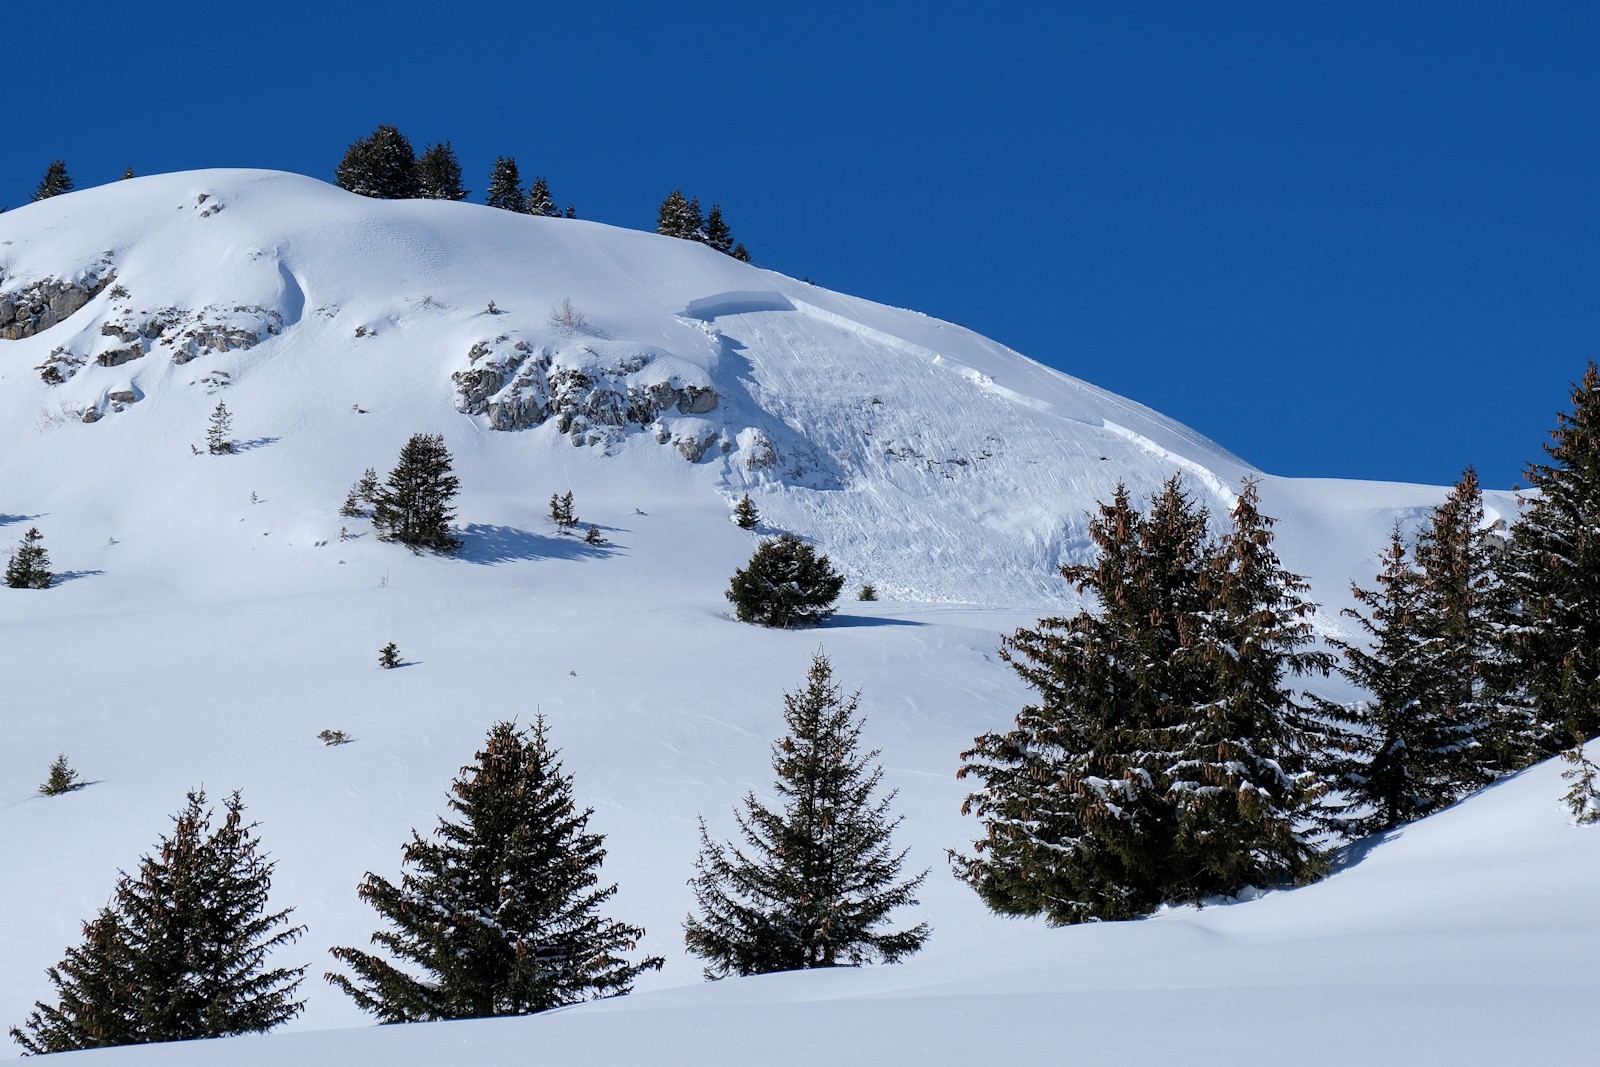 Une plaque épaisse en versant Est probablement déclenchée à distance par des skieurs passés juste au dessus.